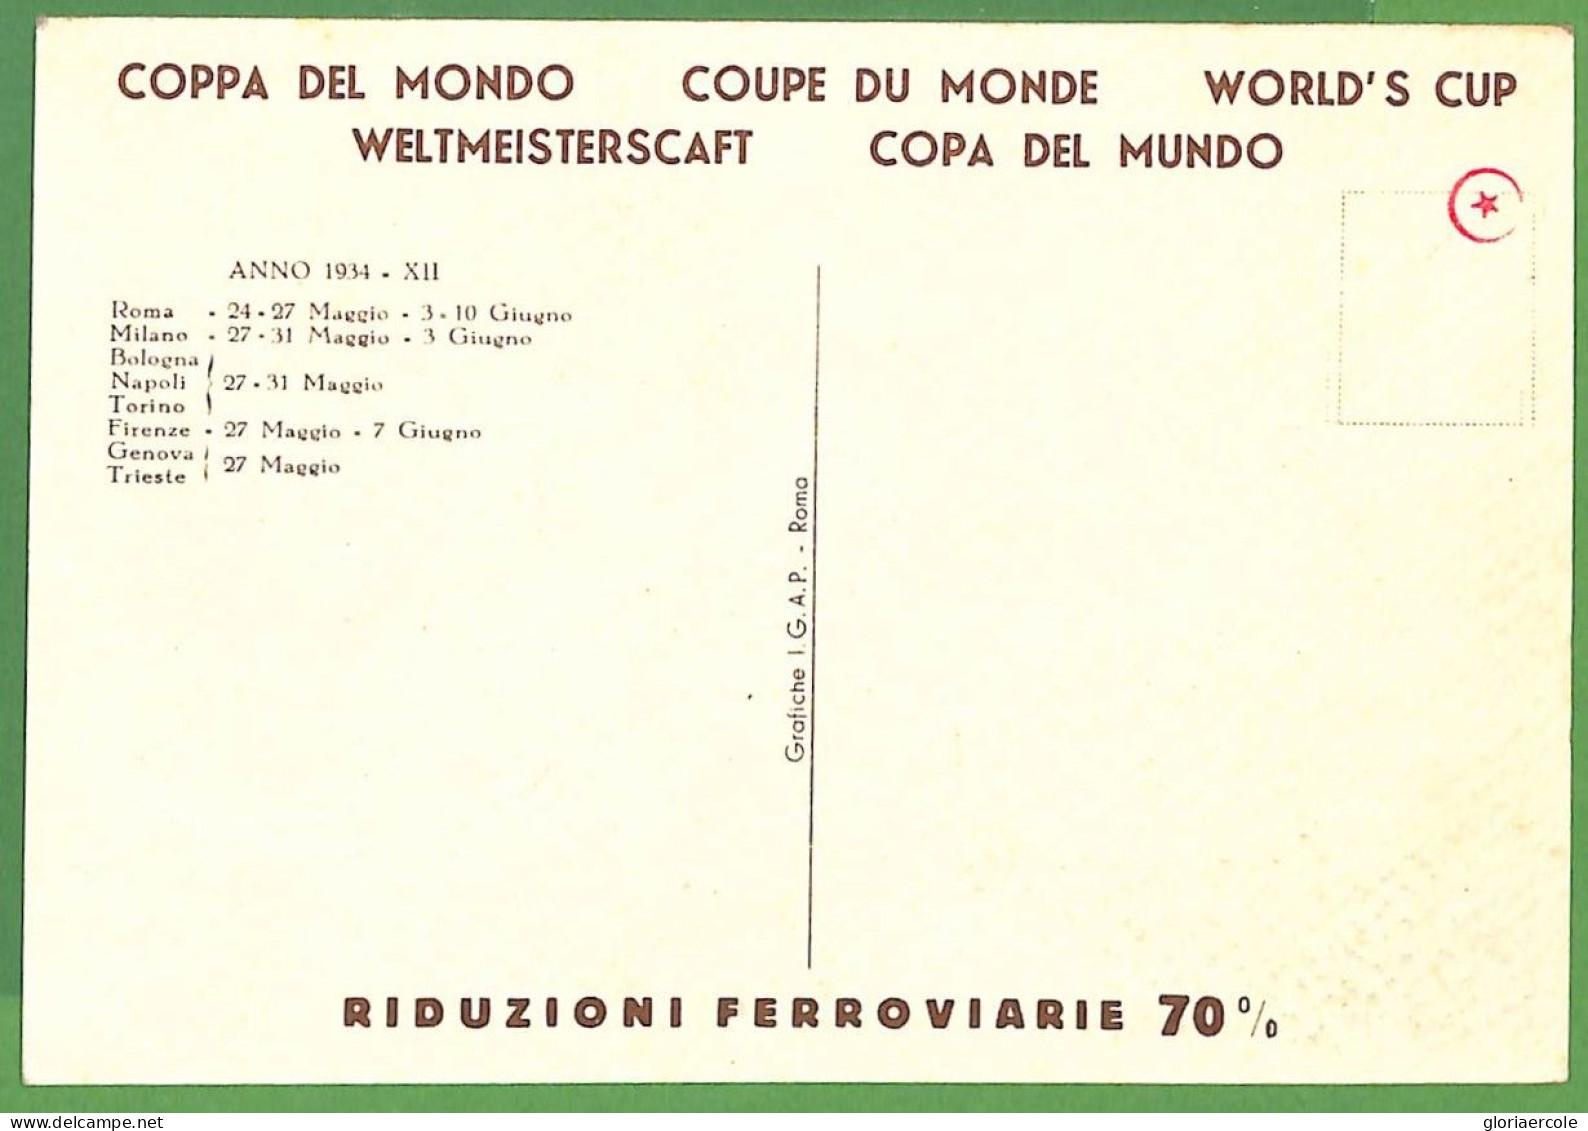 Aa5659 - ITALY - Postal History - FOOTBALL 1934 FIFA Postcard - Signed MARTINATI - Europei Di Calcio (UEFA)